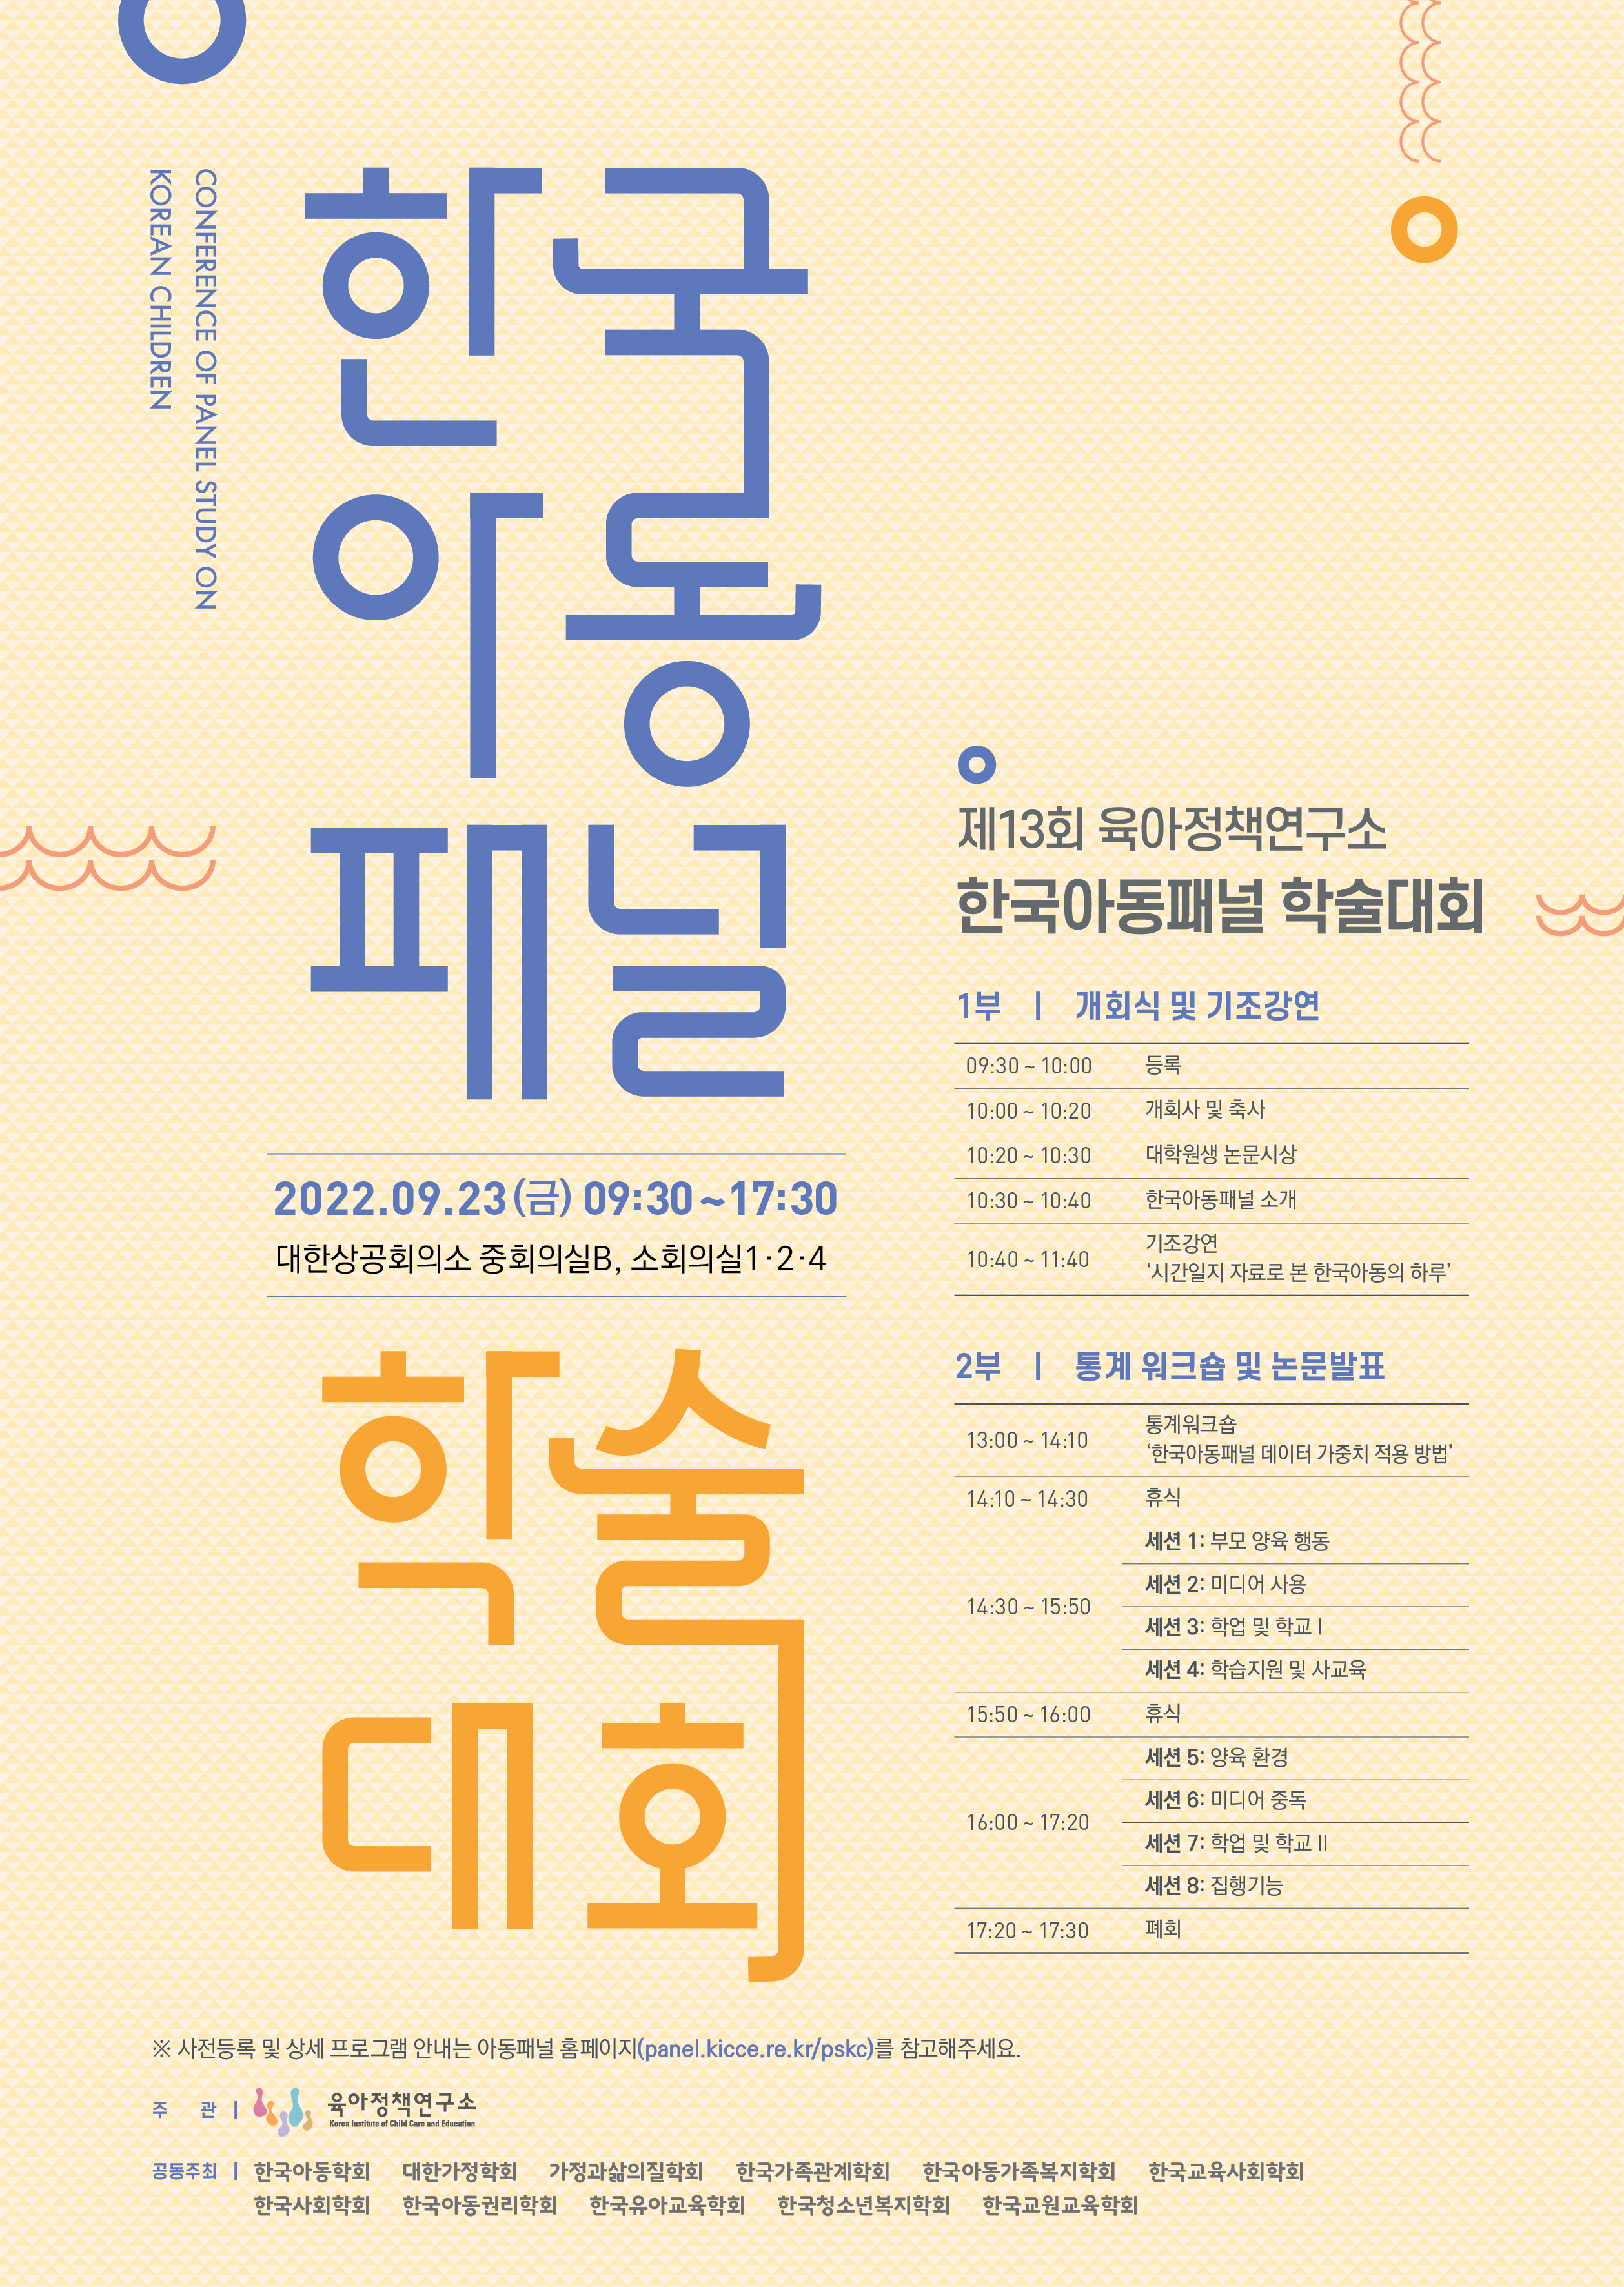 제 13회 한국아동패널 학술대회